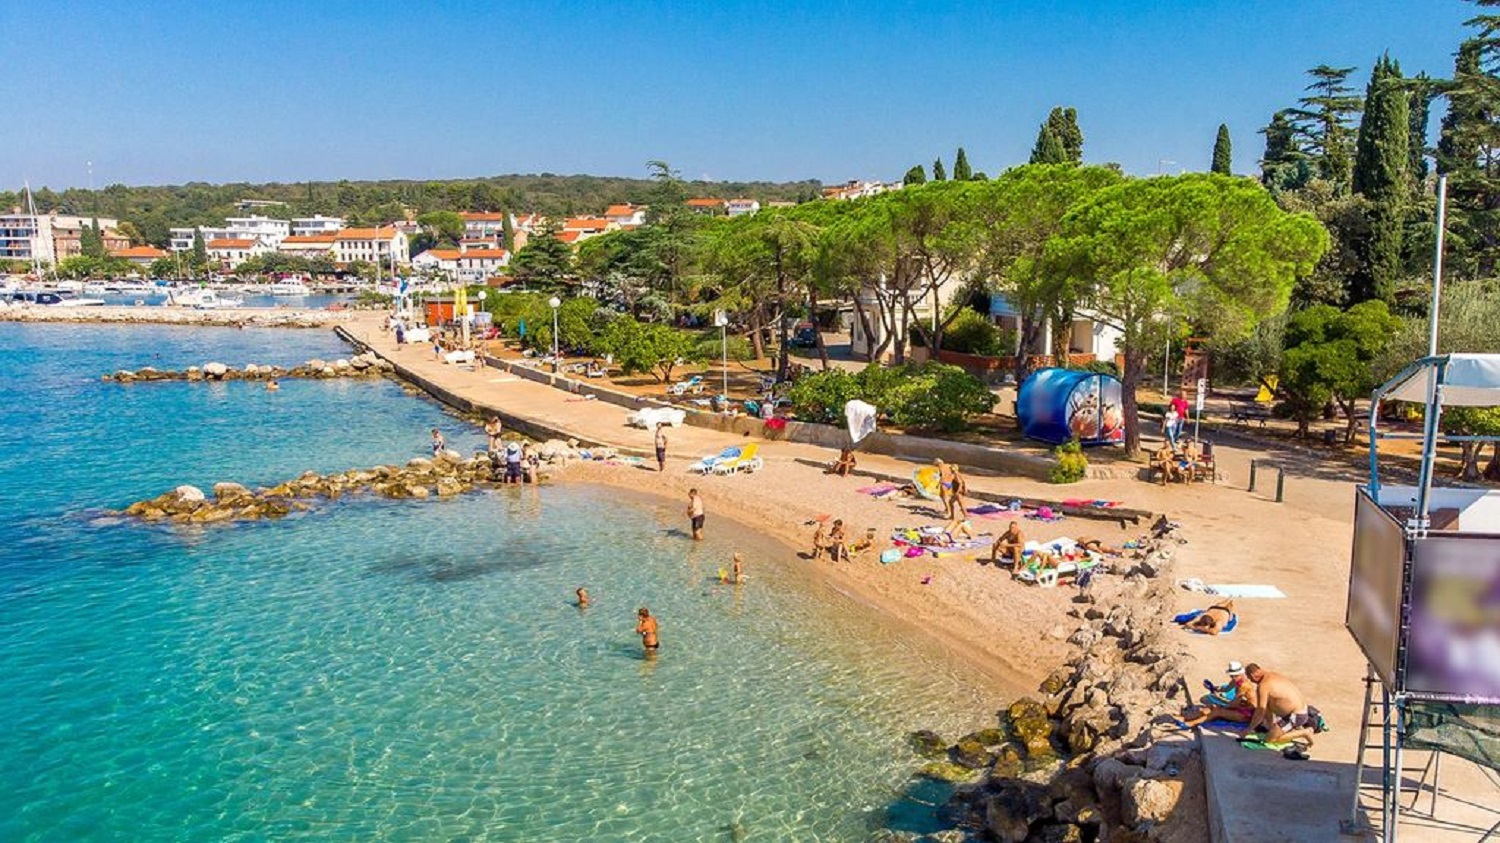 Ferienvilla mit Pool in Kroatien, Strand und Promenade am Meer in Malinska